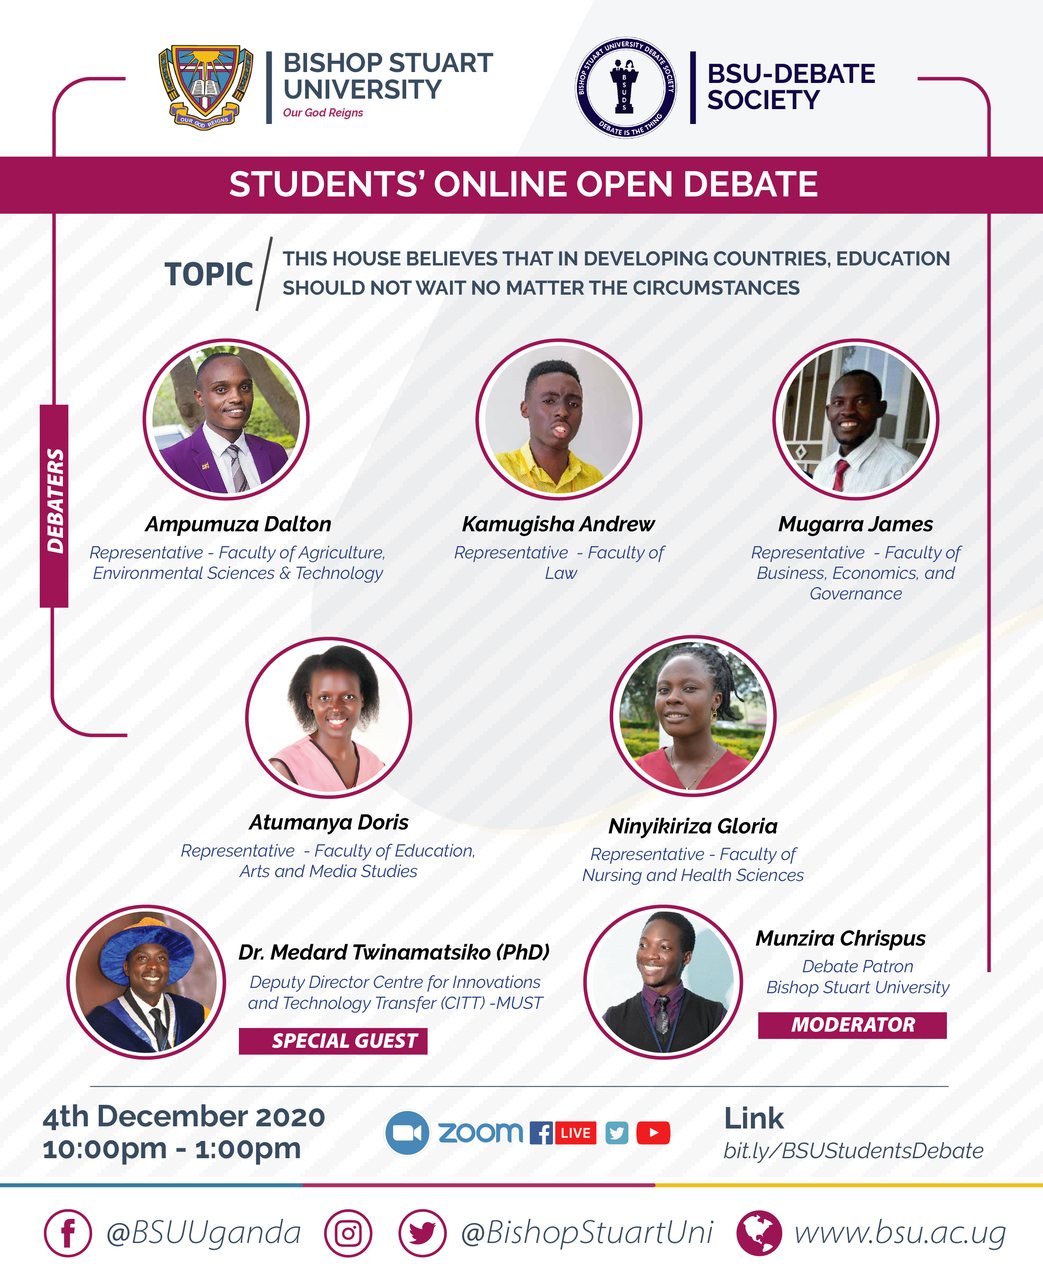 Bishop Stuart University Student’s Online Open Debate